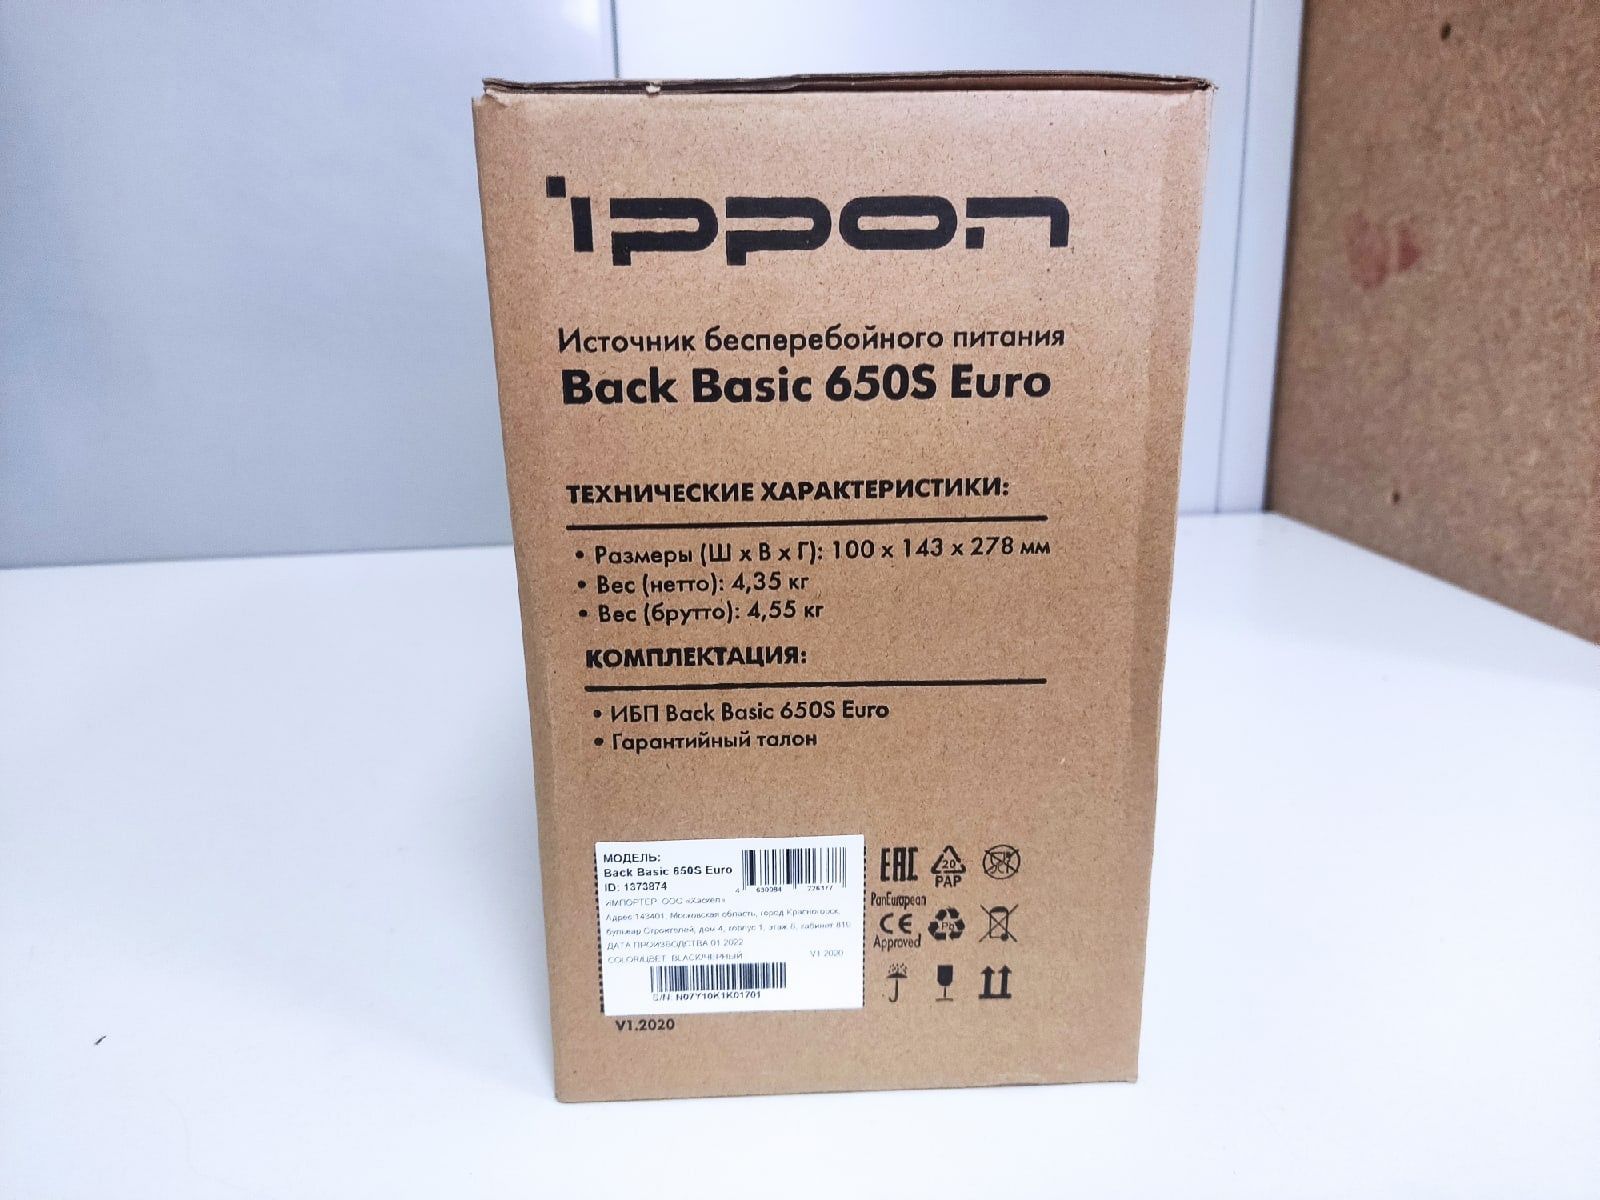 Ippon back Basic 650 Euro. ИБП Ippon back Basic 650 Euro 2 АКБ. Ippon back Basic 650s Euro. Back basic euro 650s